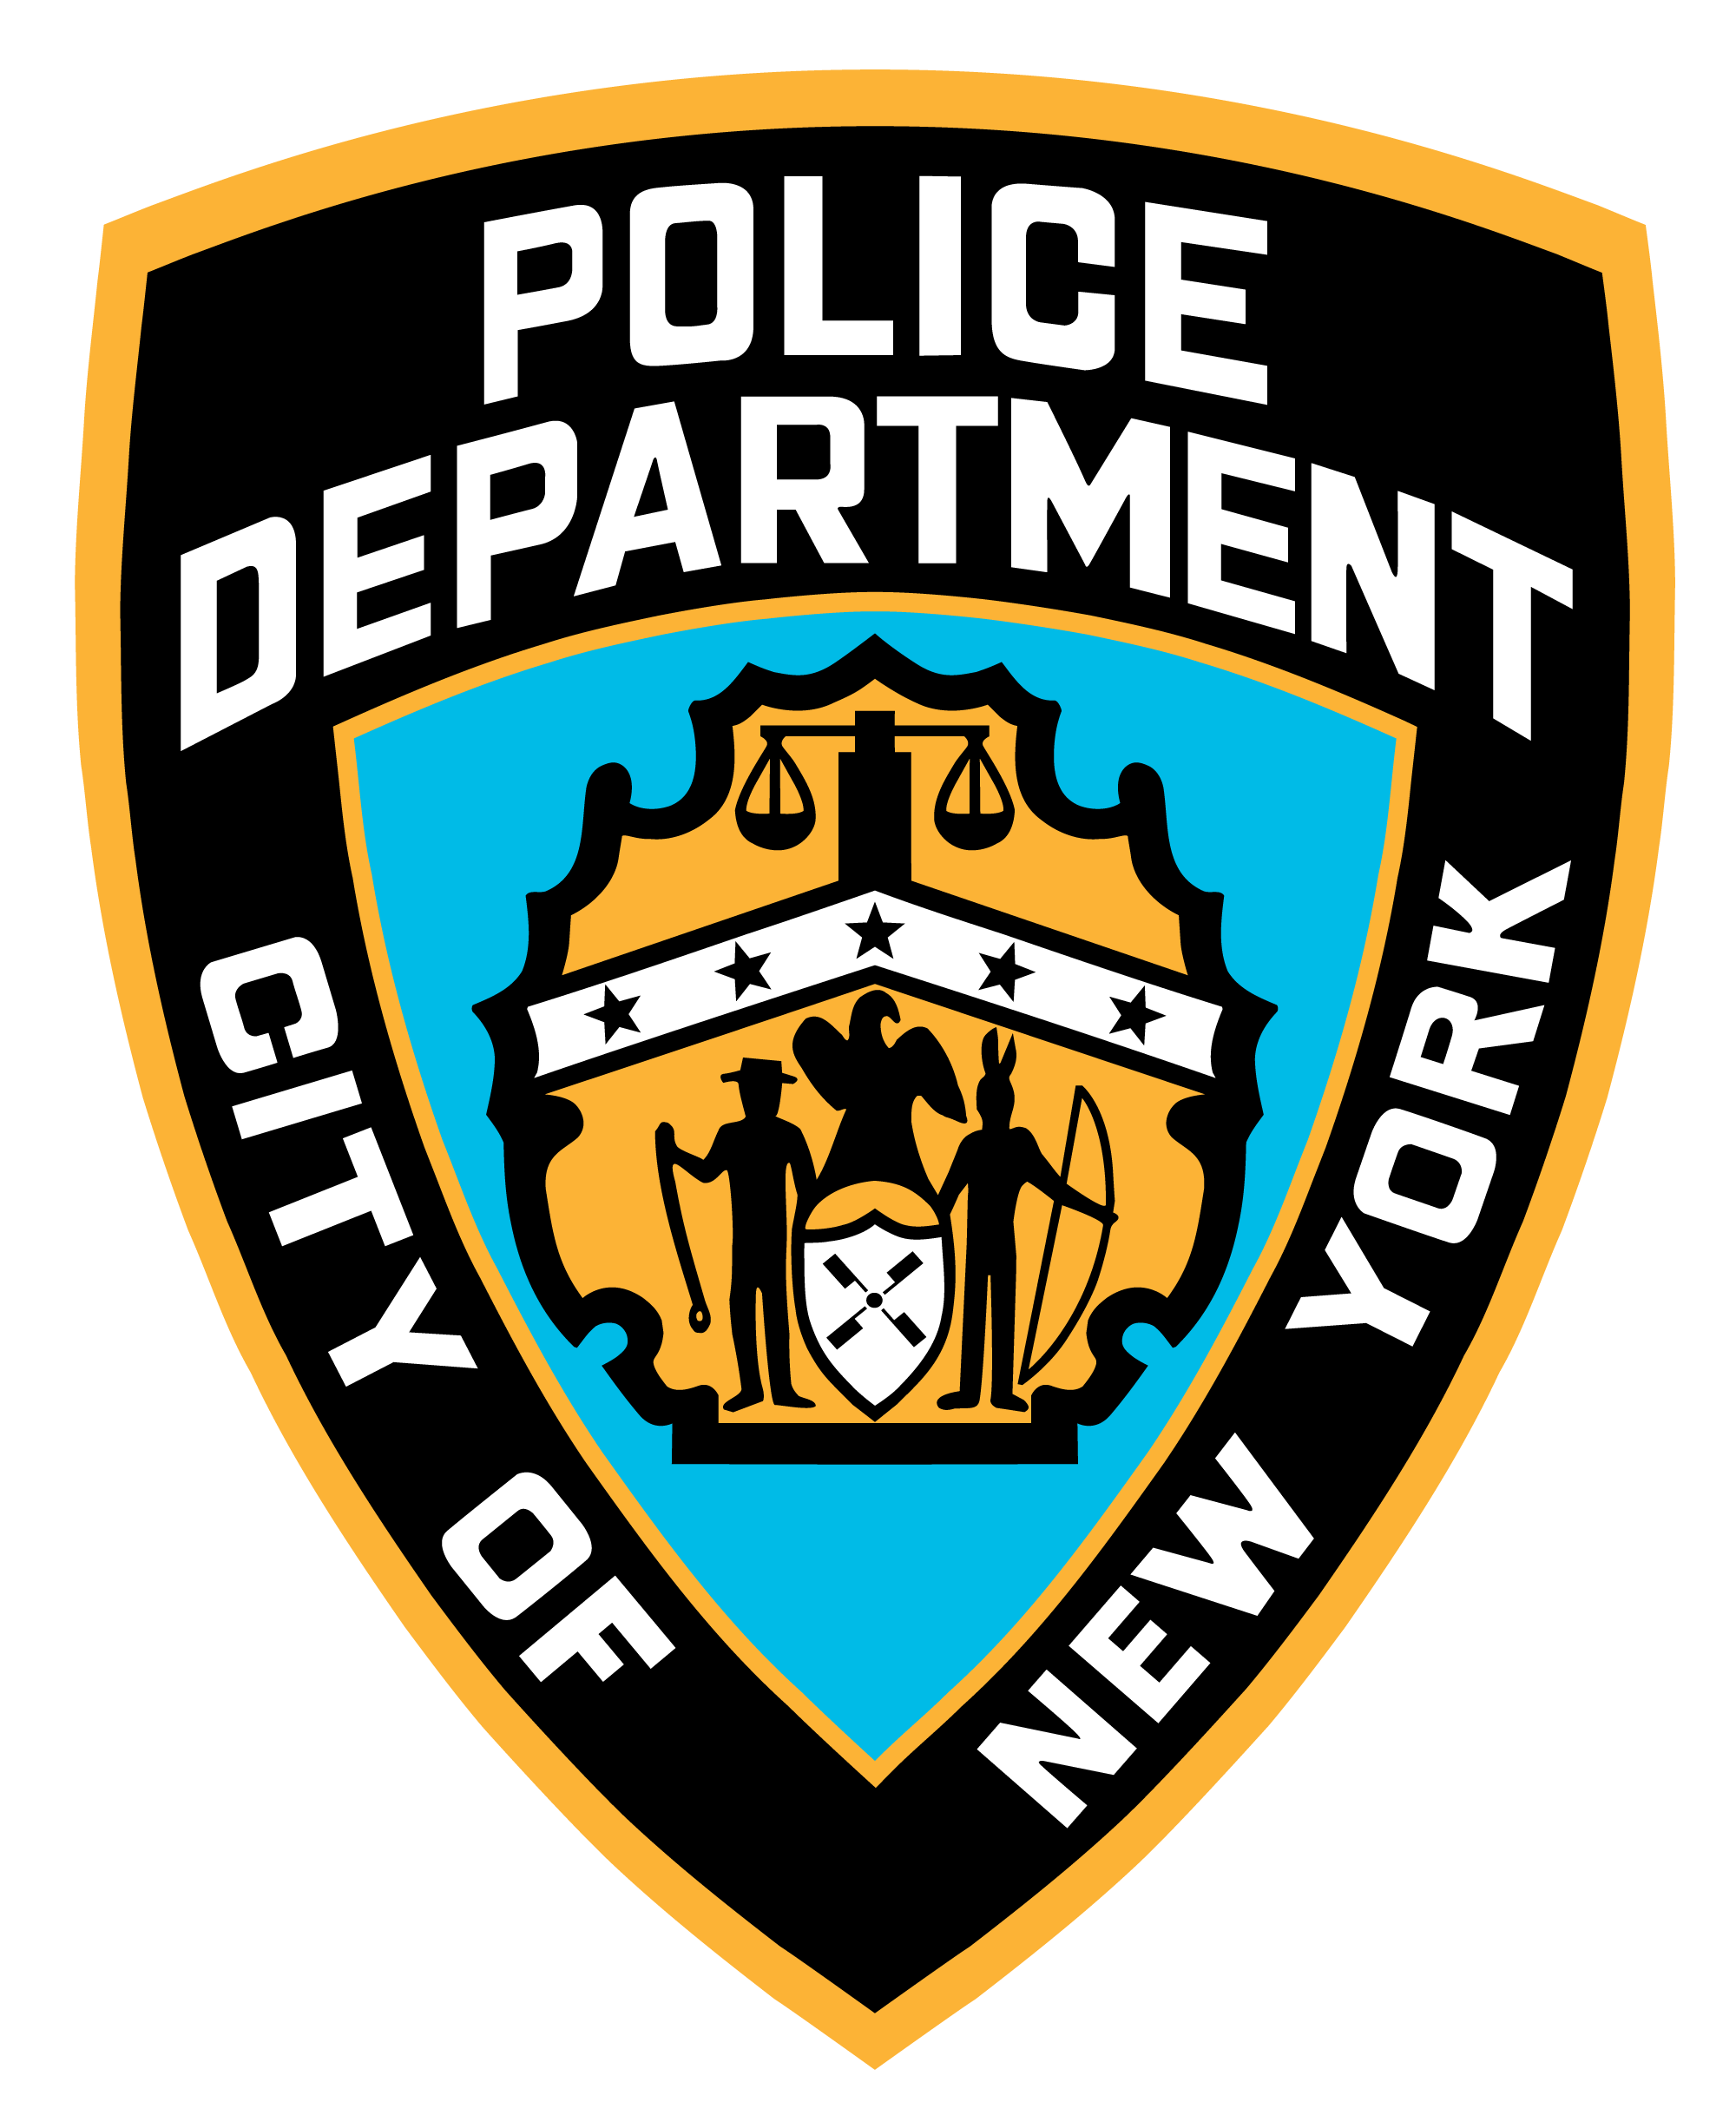 River City Police Logo